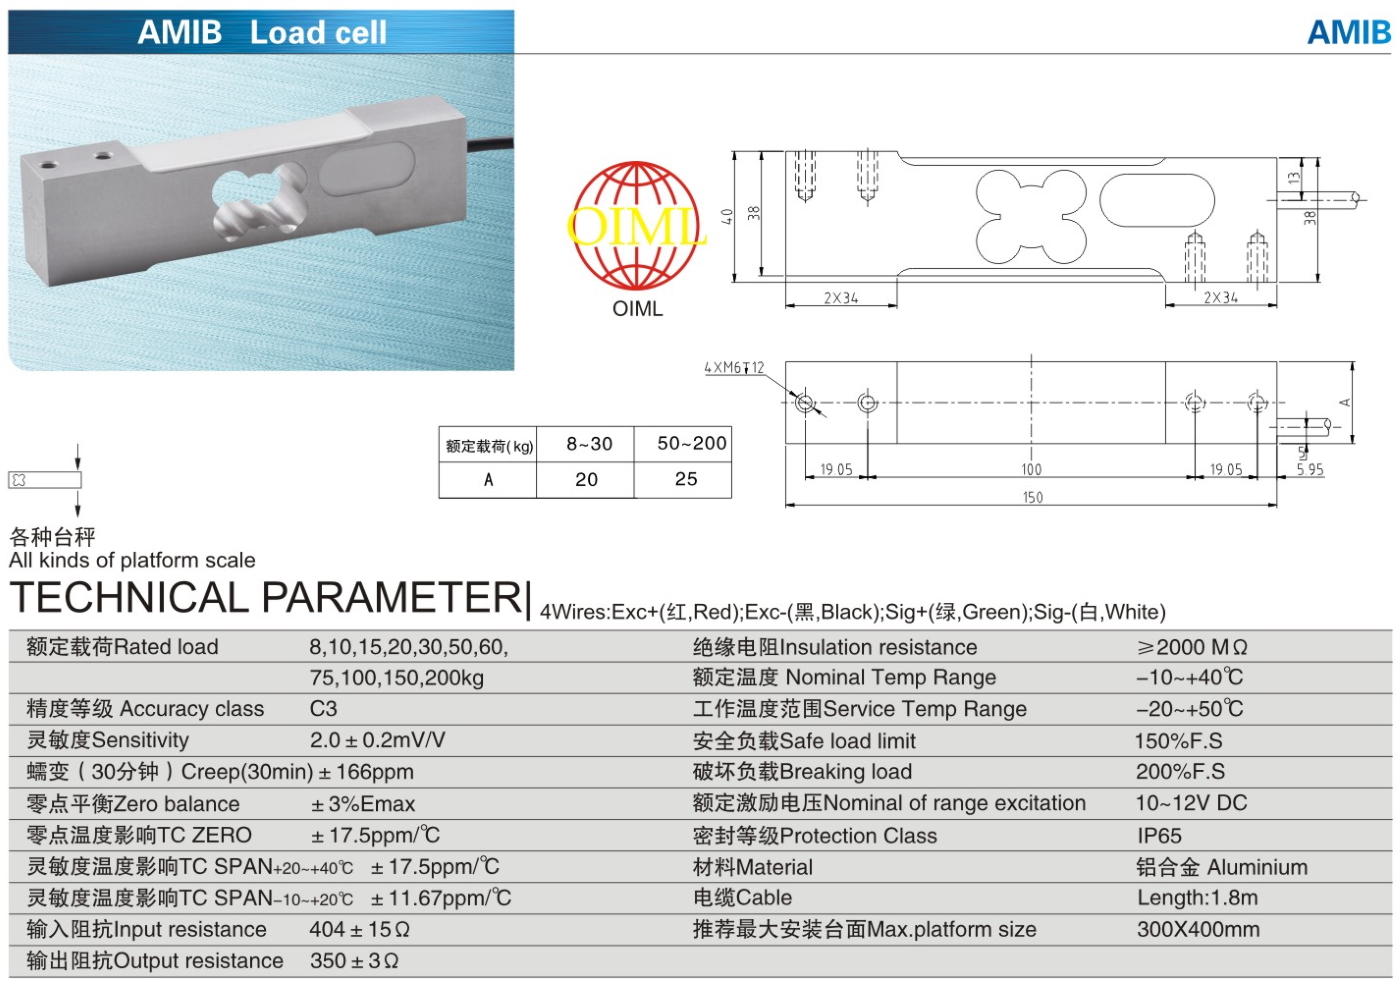 img/loadcell-images/aluminium-singlepoint/KELI_AMIB_Loadcell-TTM_Teknoloji.jpg